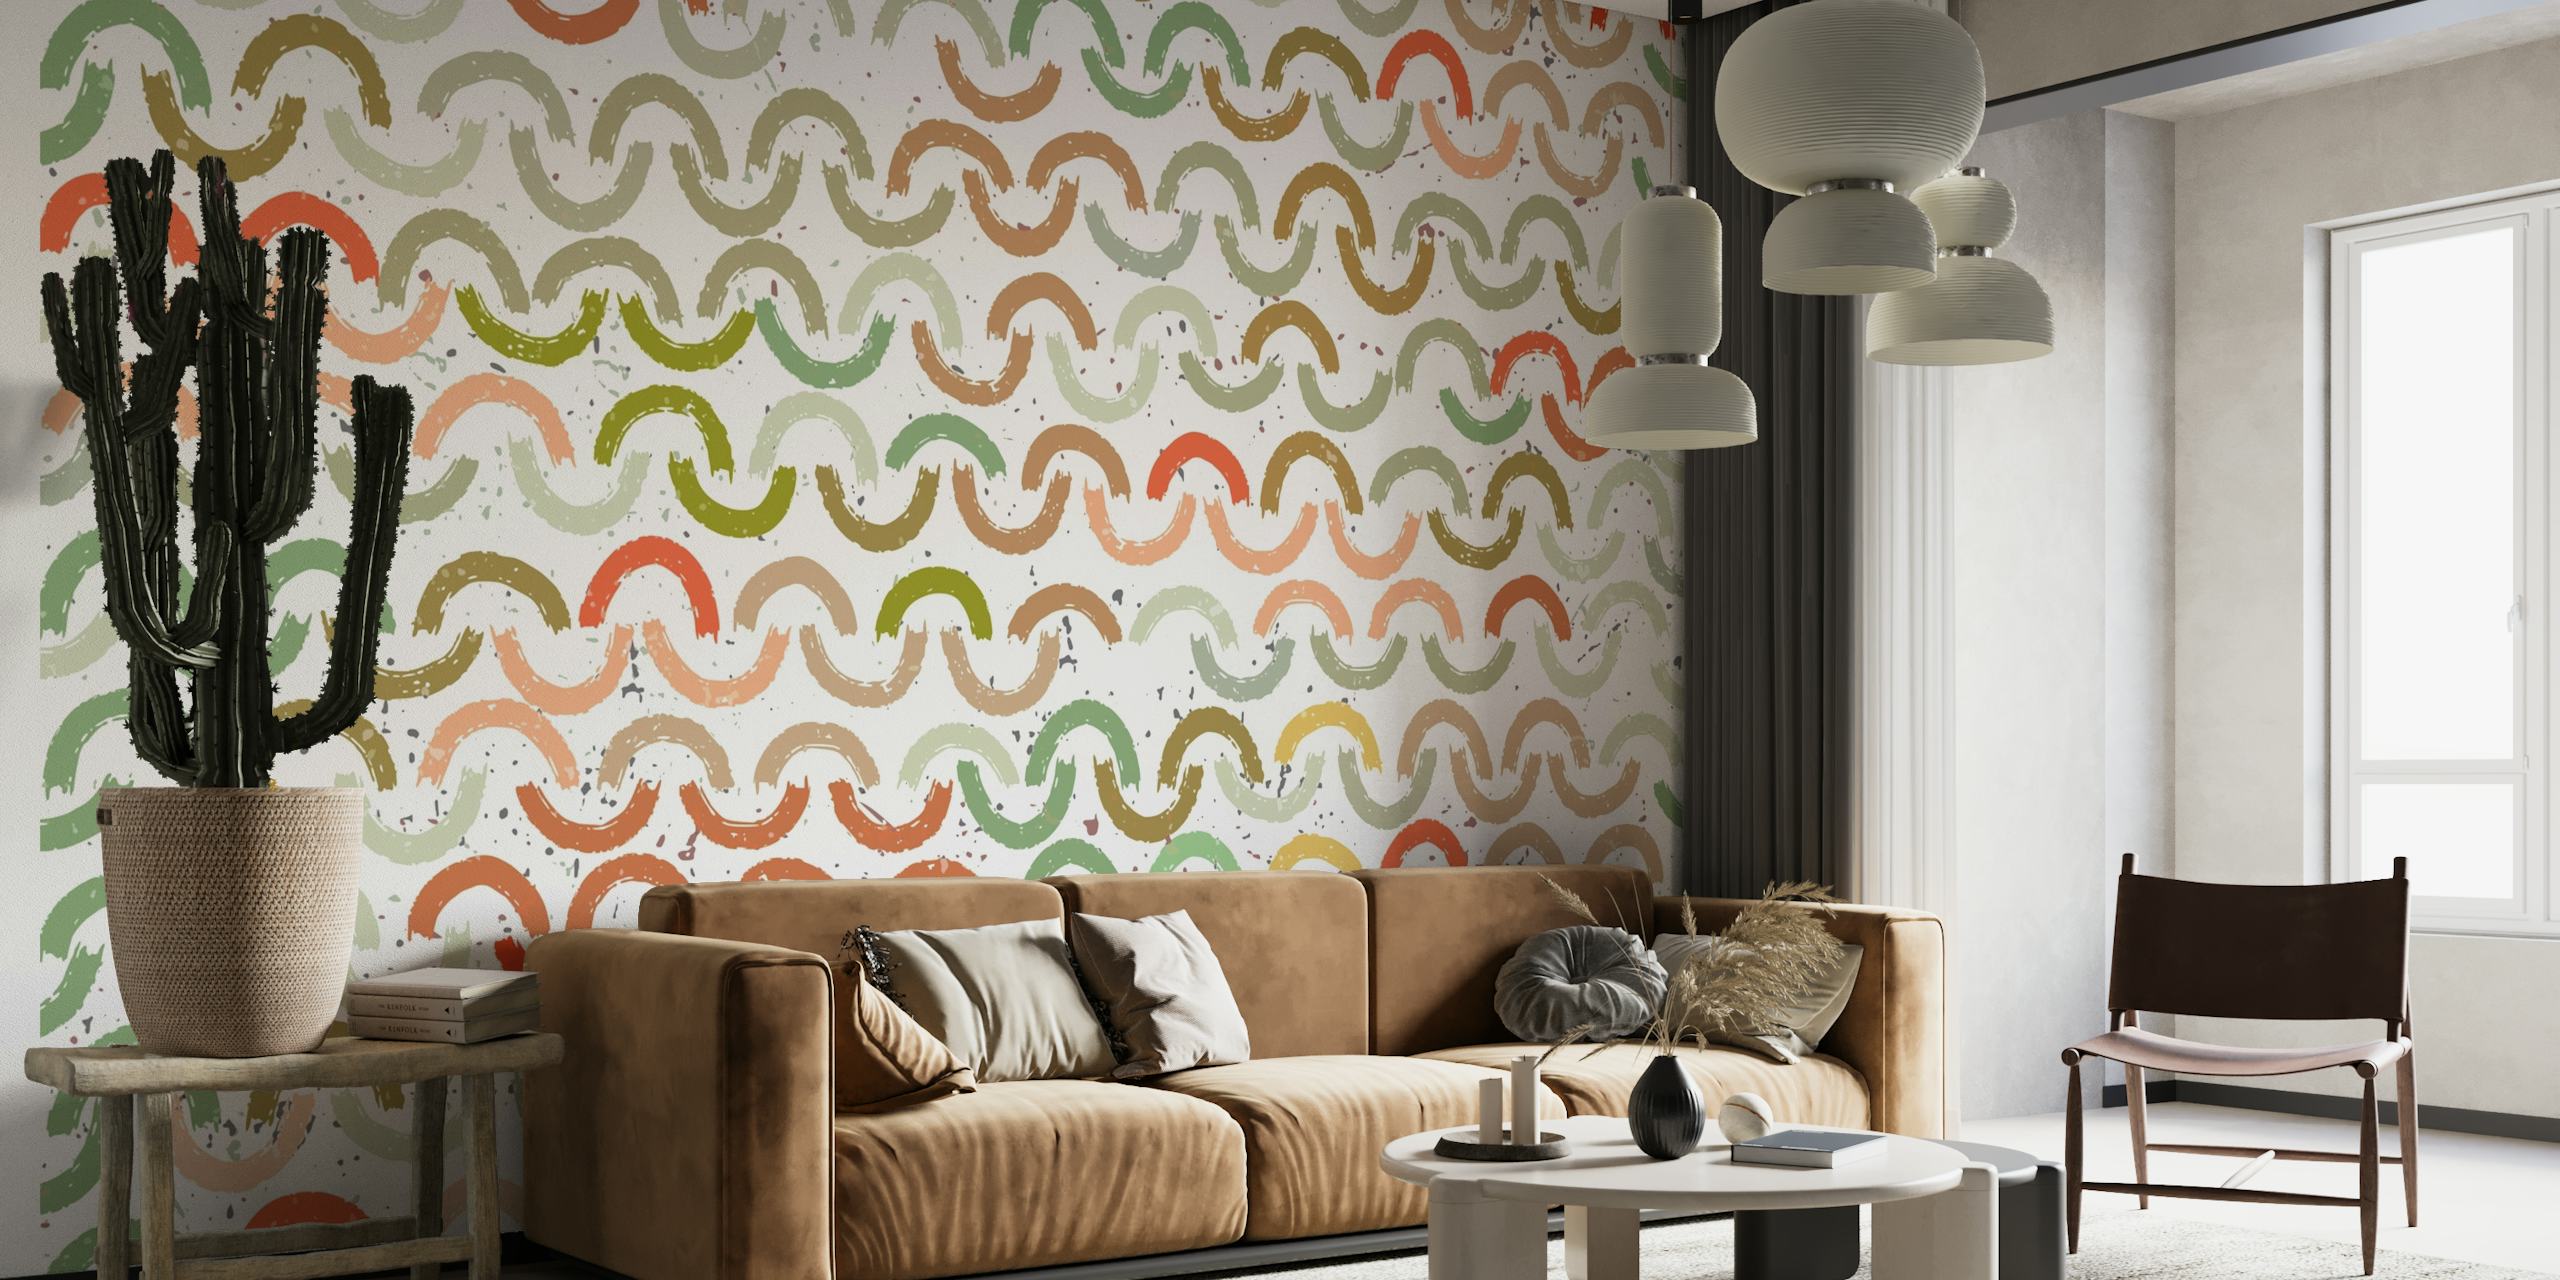 Buntes Wandbild mit Muster aus bemalten Bögen in verschiedenen Farbtönen